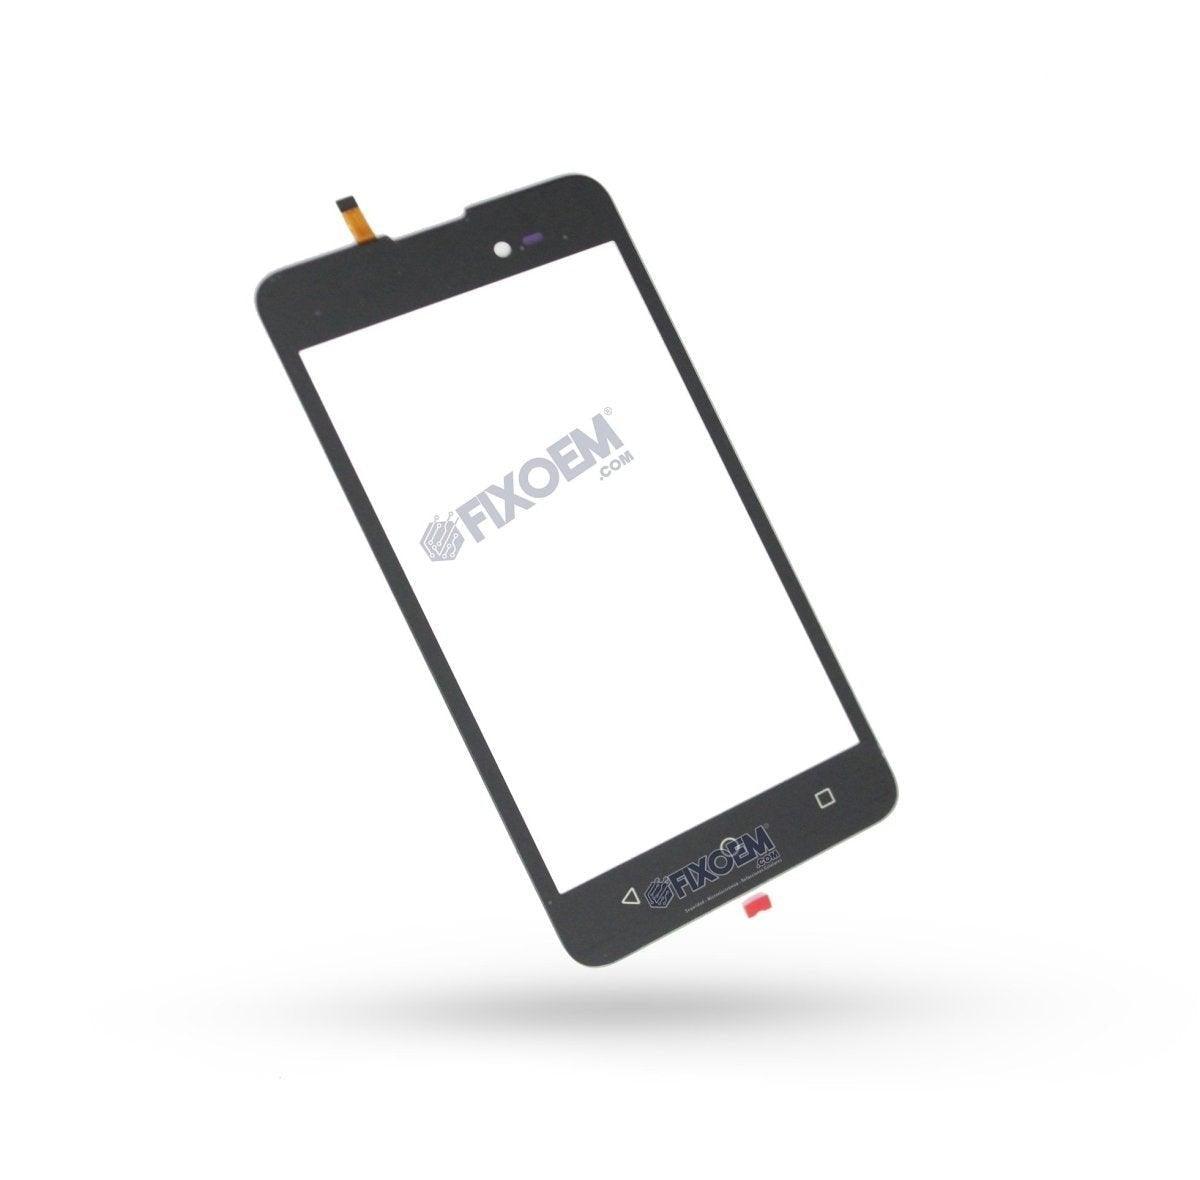 Touch Lanix X520 a solo $ 80.00 Refaccion y puestos celulares, refurbish y microelectronica.- FixOEM